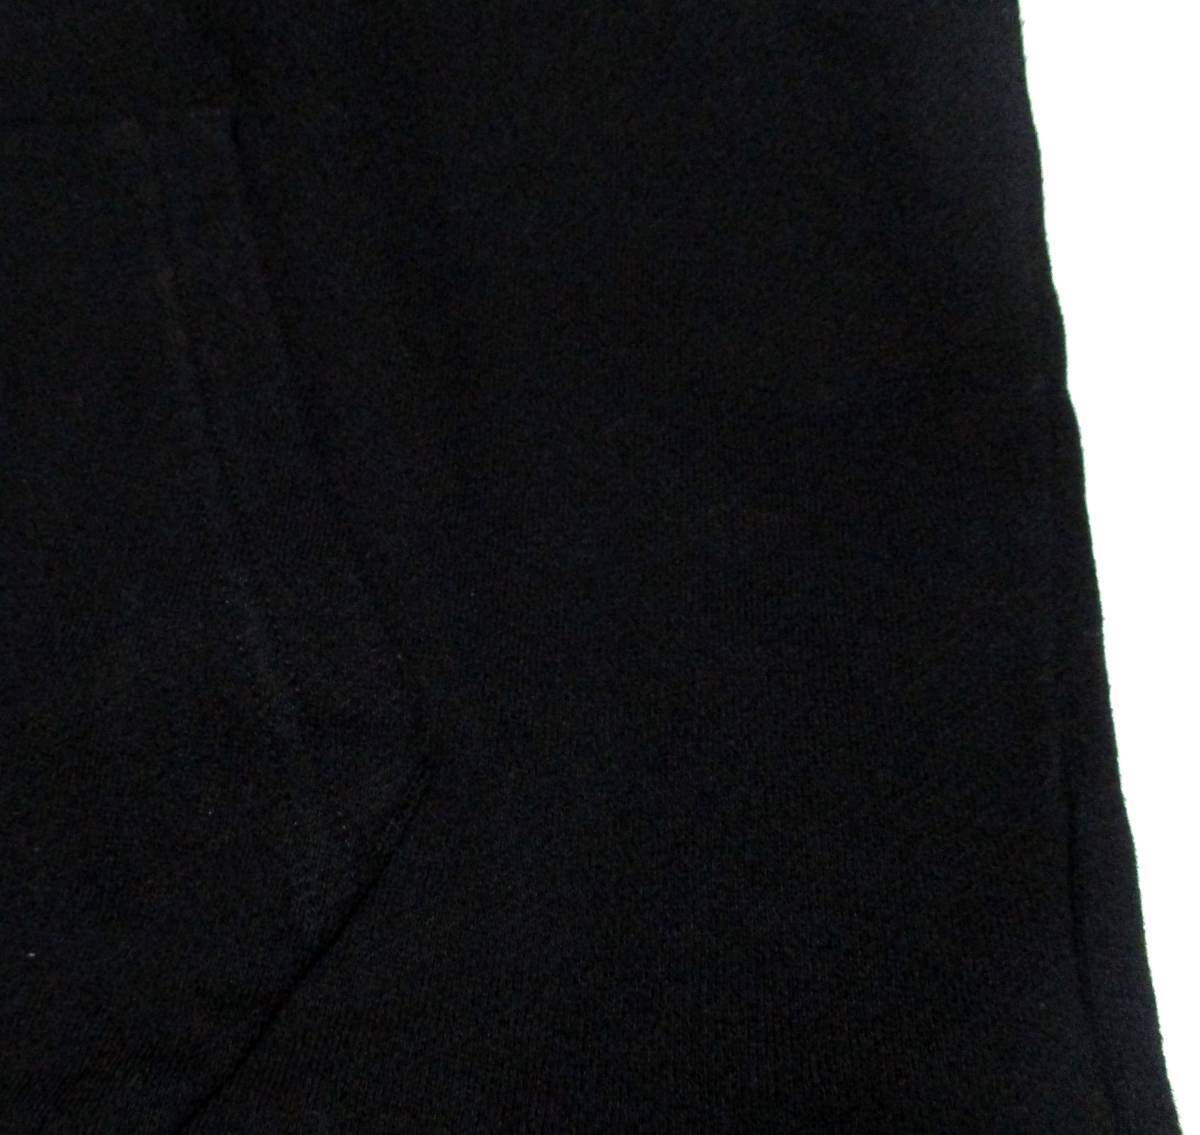 大人気サイズ L 美品 ブラックレーベルクレストブリッジ フード裏・袖クレストブリッジチェック柄 プルオーバー スウェットパーカー 日本製_画像7